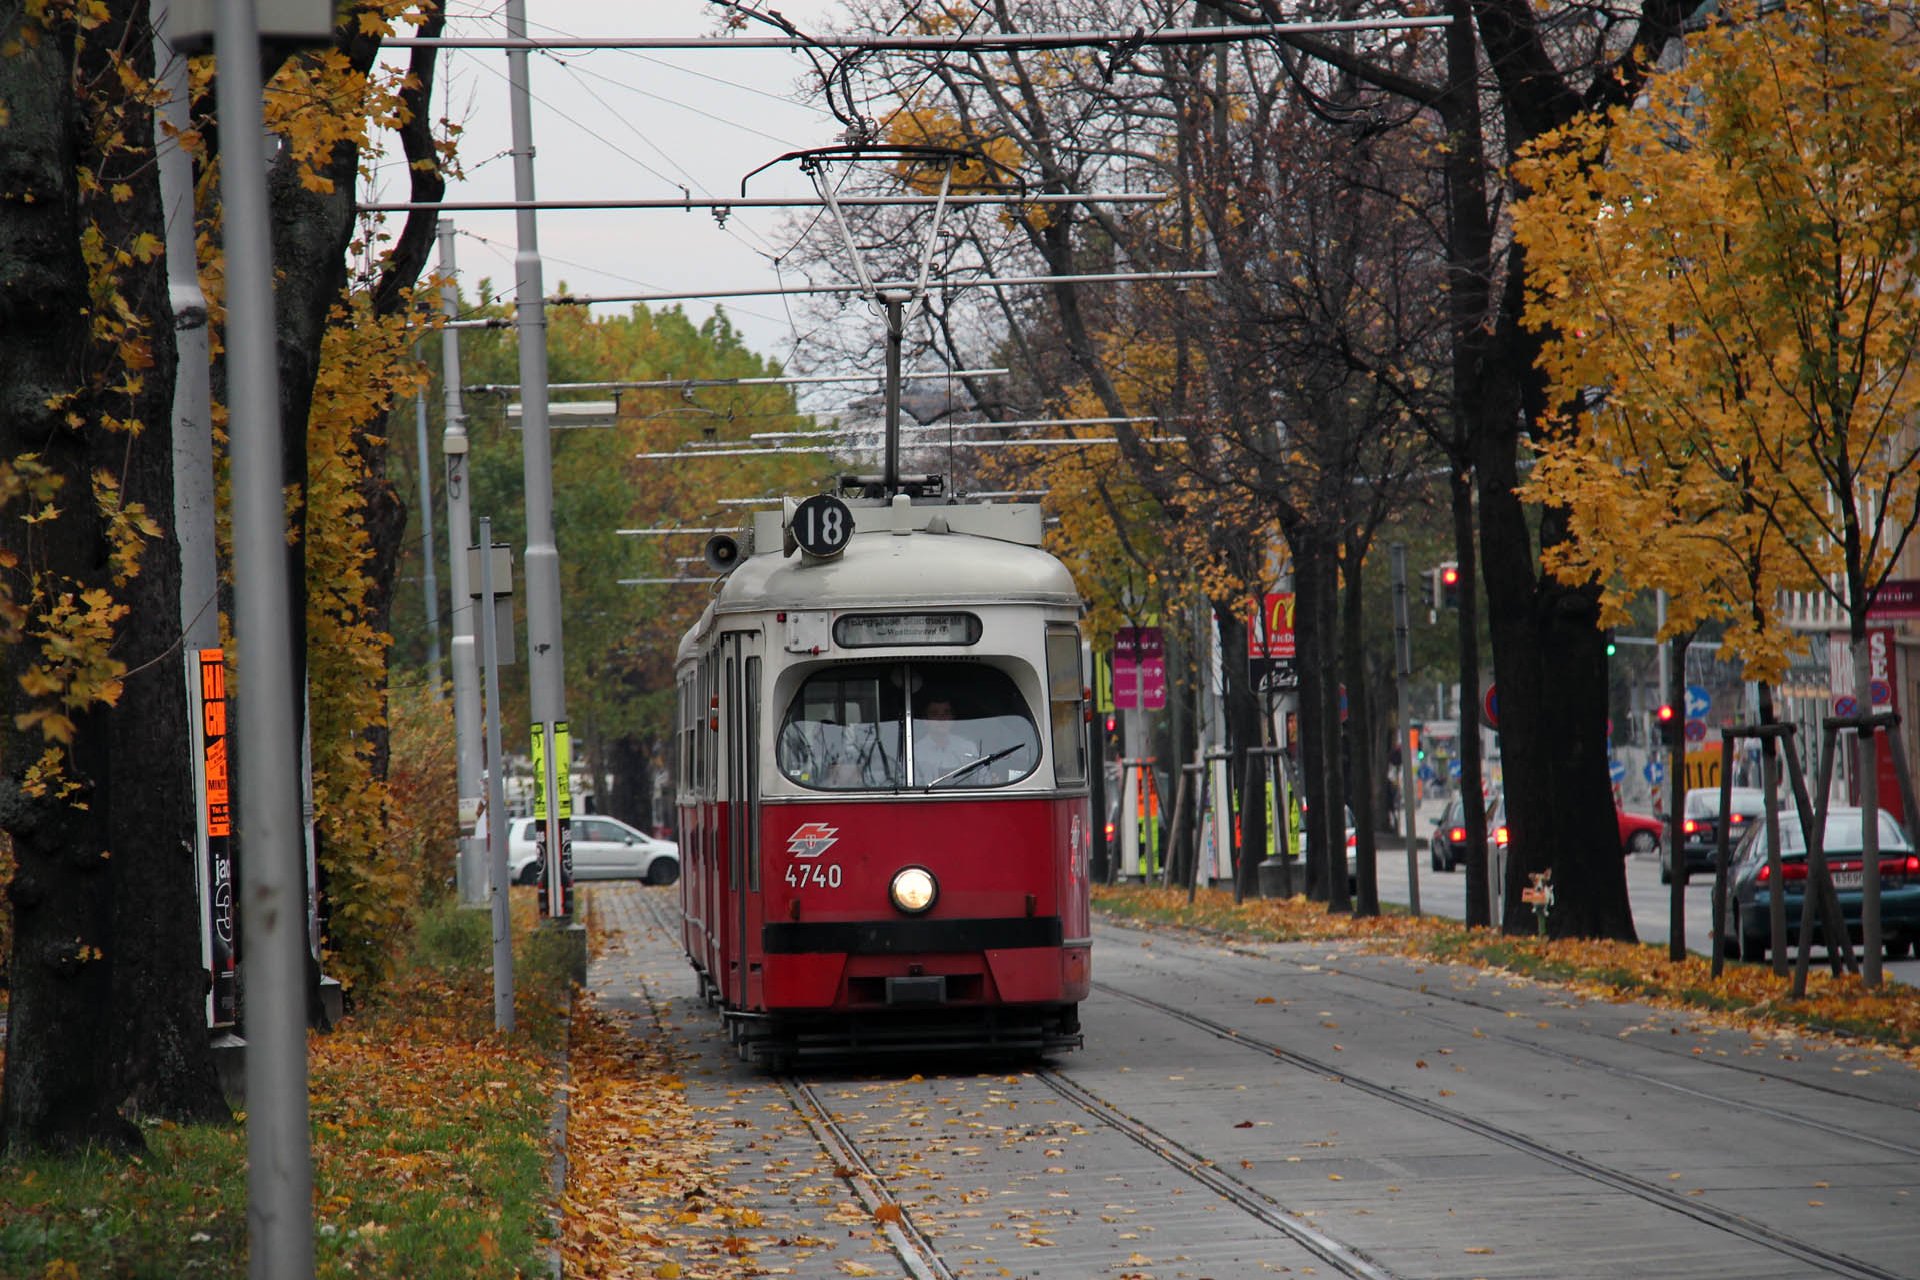 E1 4740 Der Spiegel ist fast schon montiert - Herbst 2010. When almost all trams had already a mirror - autumn 2010.